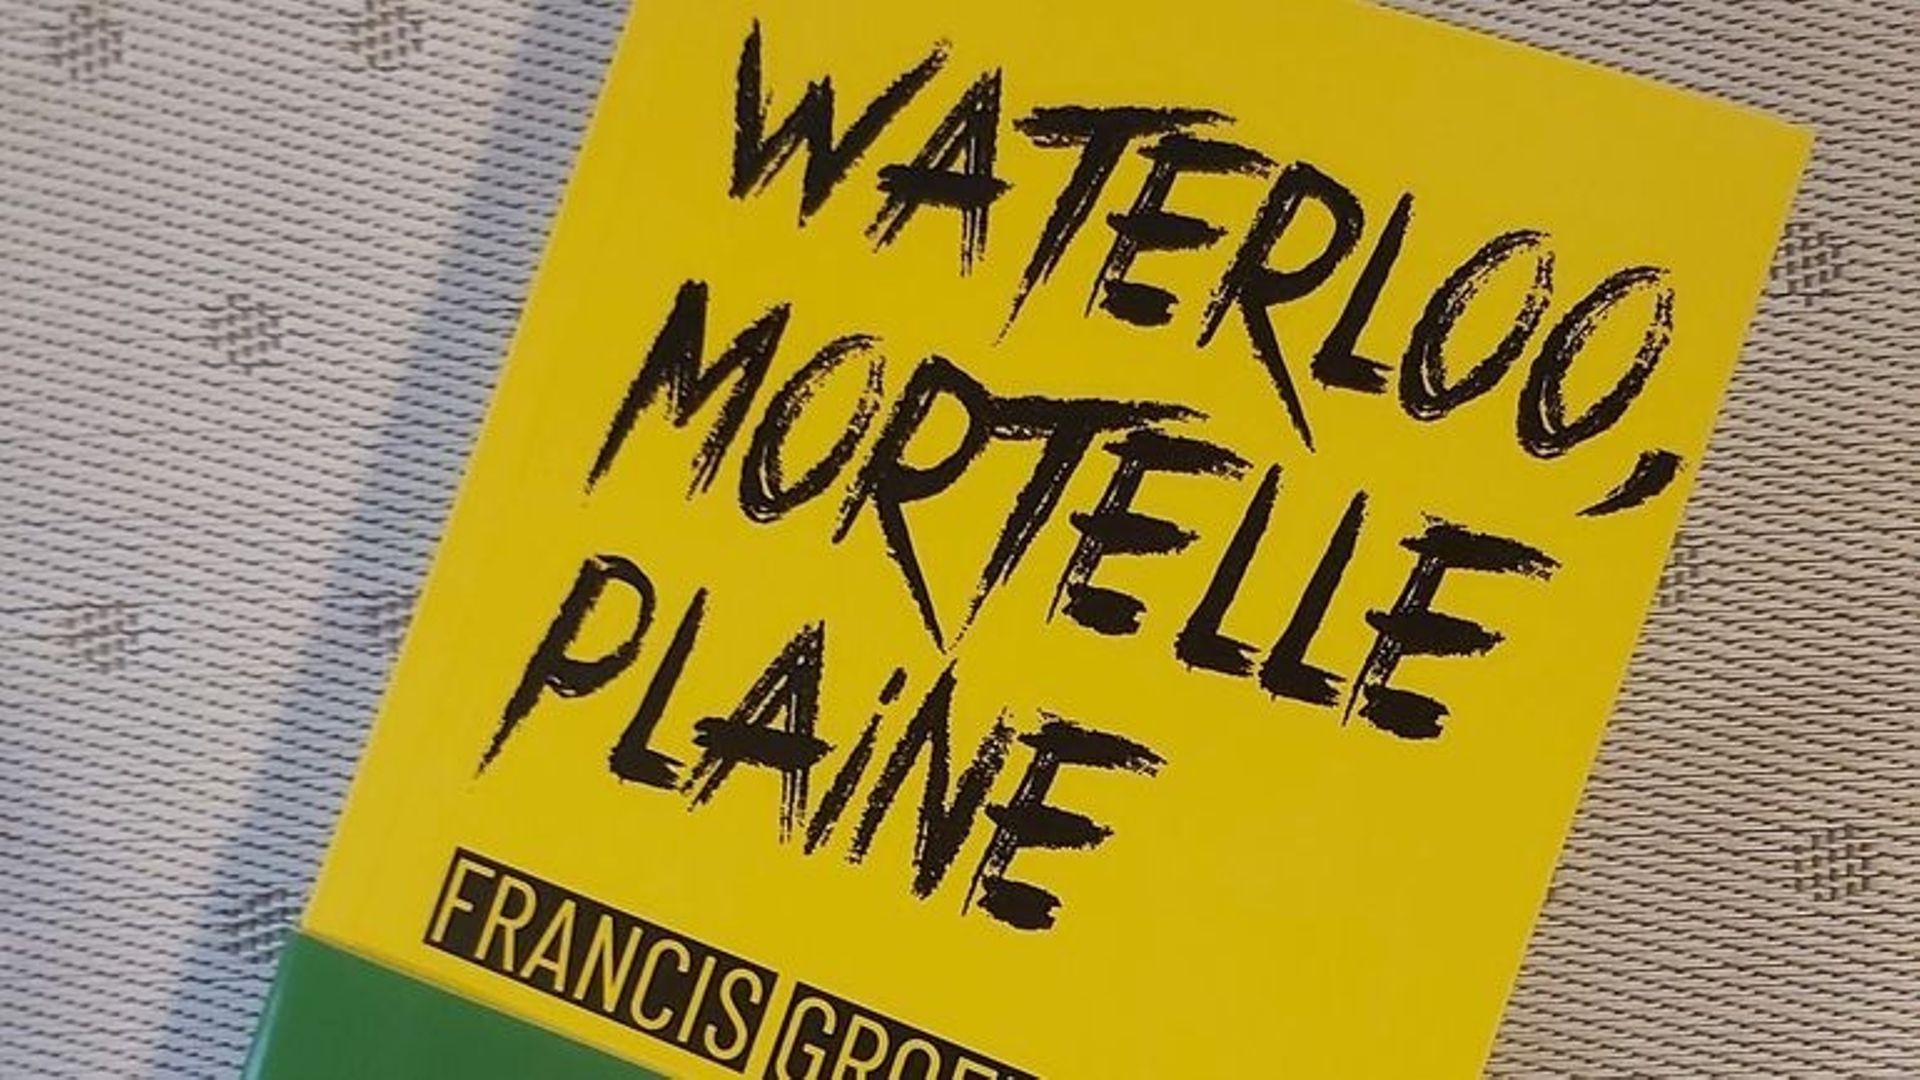 Le livre de Francis Groff "Waterloo, mortelle plaine" paru chez Weyrich Edition